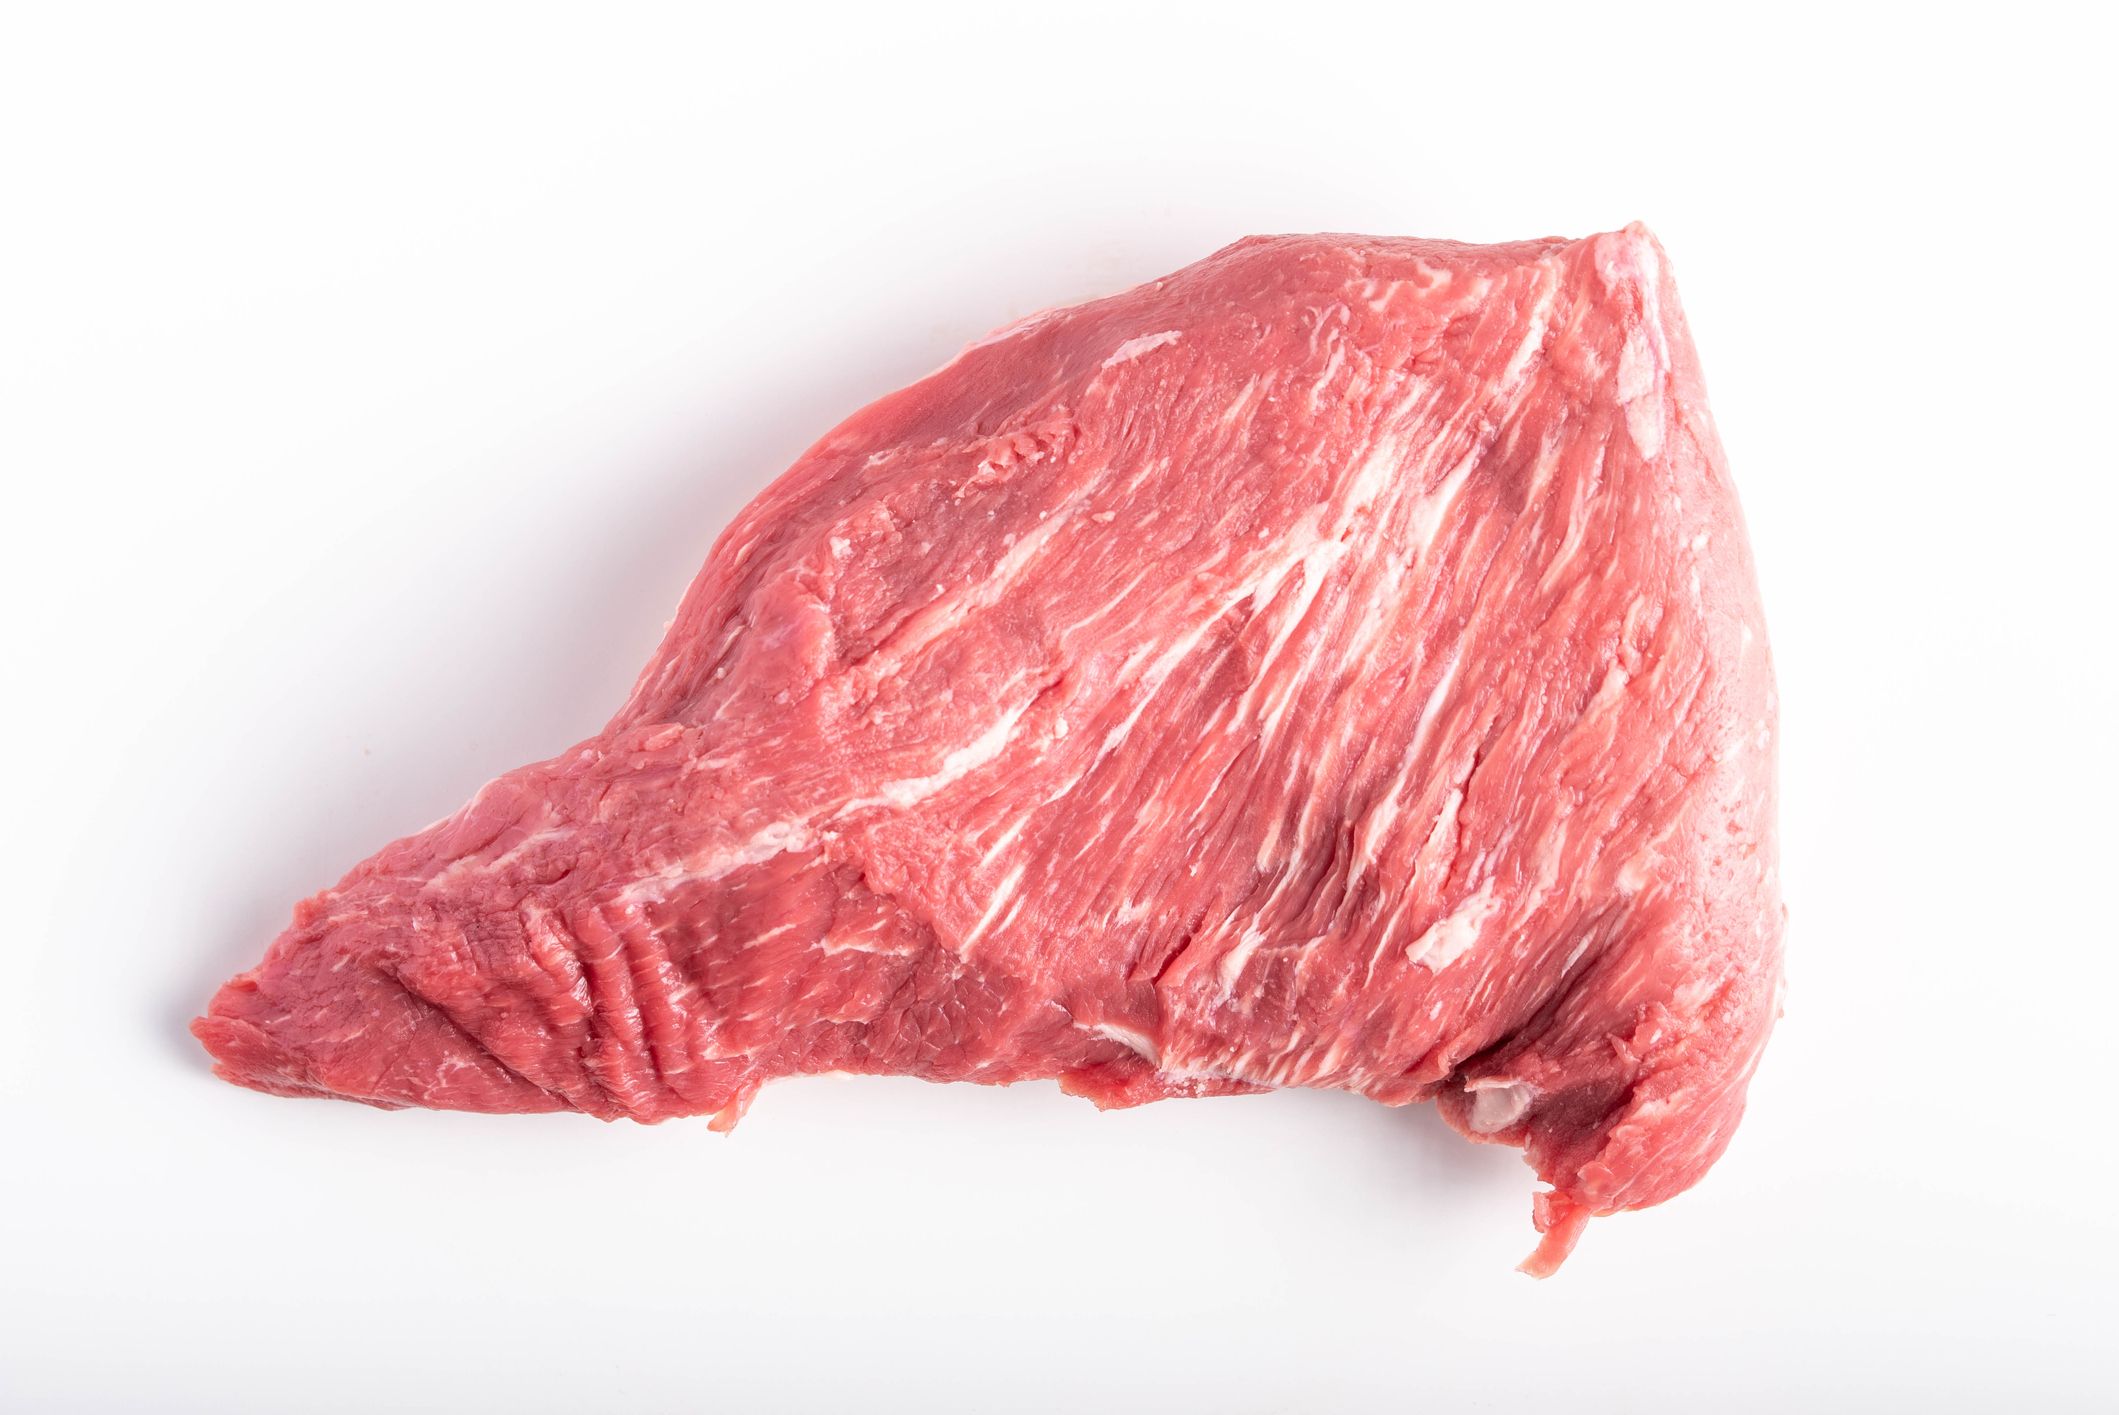 Best Ribeye Steak Cuts For Grilling Like A Pro